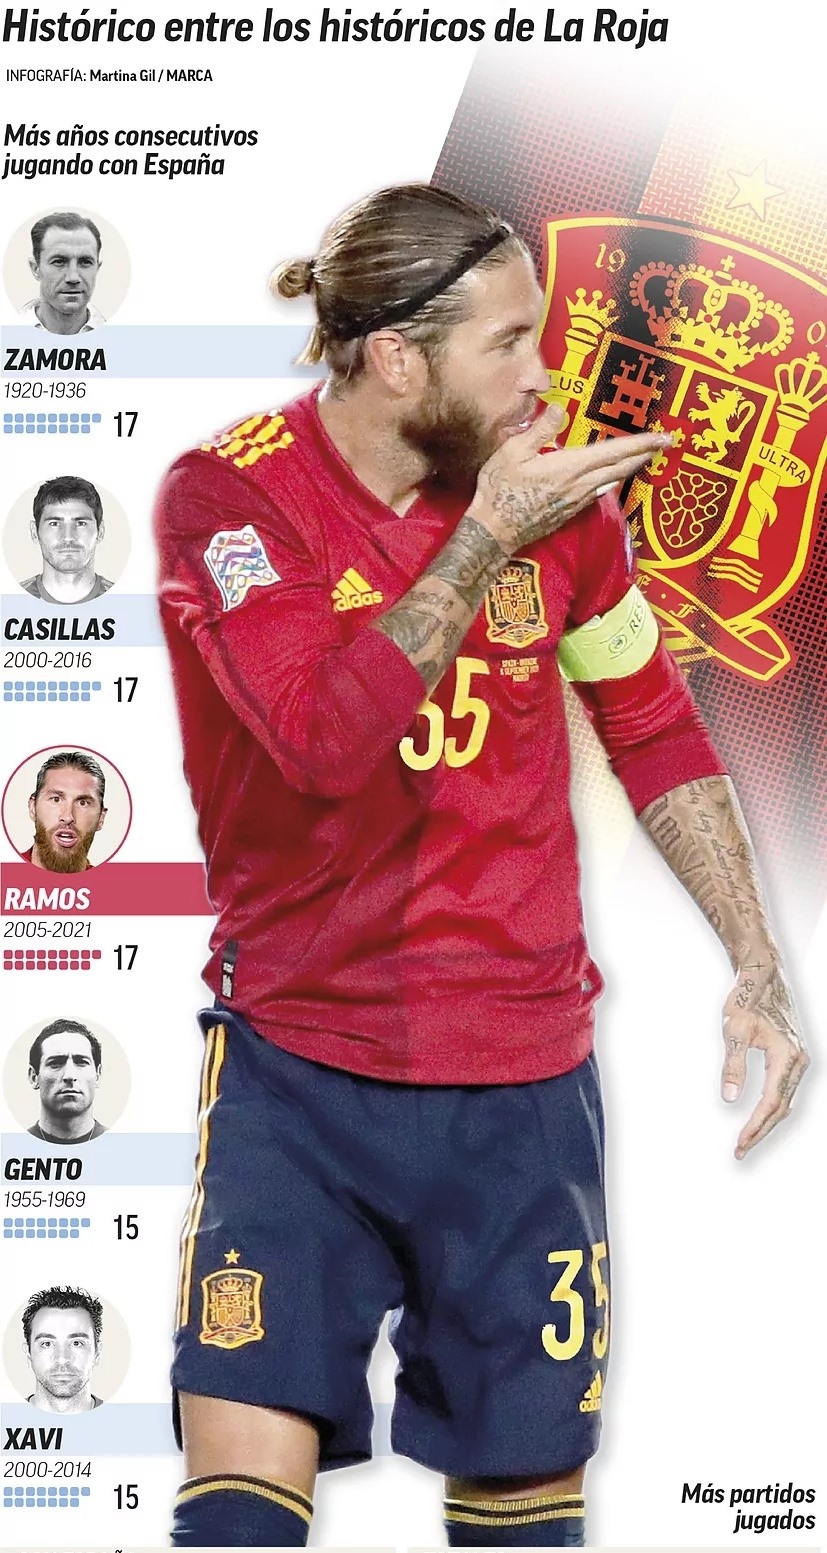 Trong năm nay, Ramos có thể xác lập kỷ lục thế giới về số trận đấu quốc tế. Ảnh: Marca